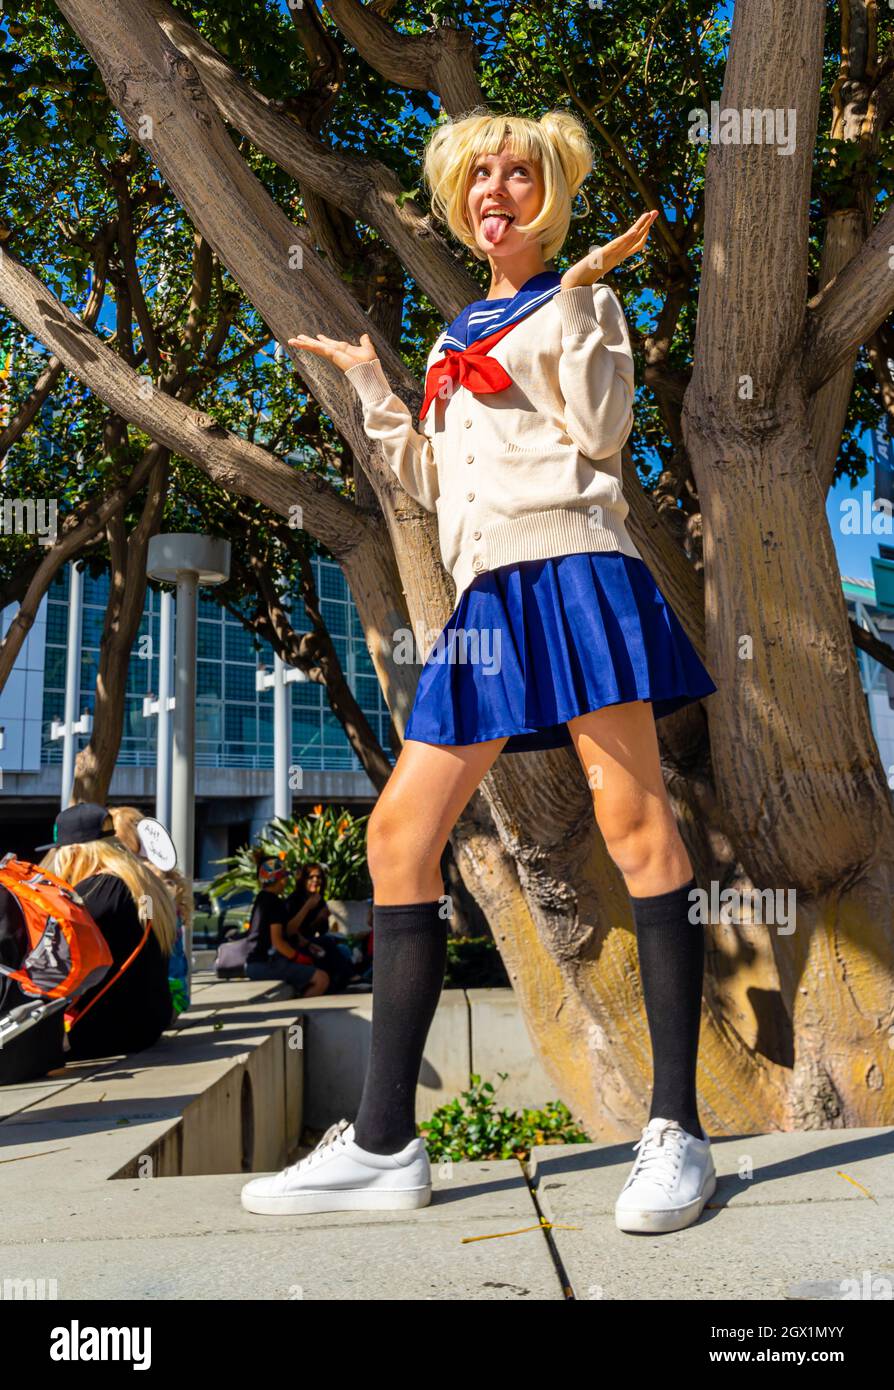 Partecipante che raffigura la studentessa giapponese Himiko Toga di My Hero Academia in uniforme al Comic con di Los Angeles, CA, Stati Uniti Foto Stock